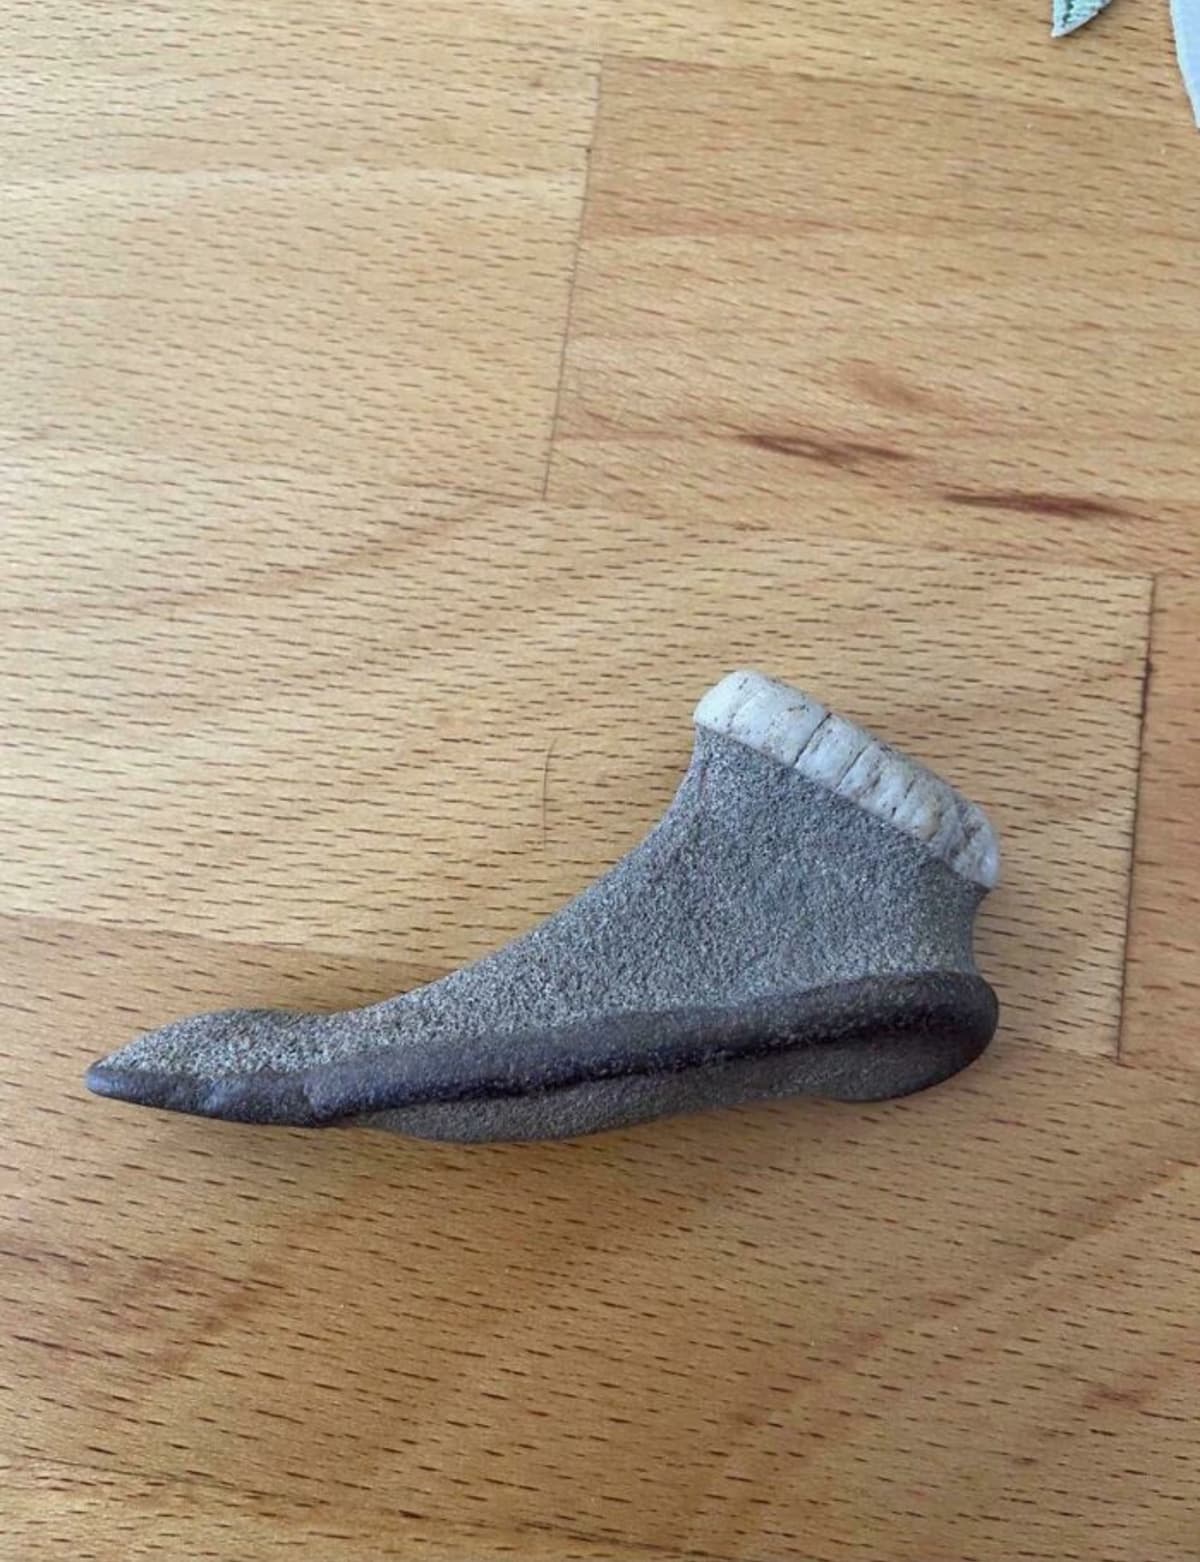 Pokud už i ponožky drží tvar... Počkat, tohle je kámen!